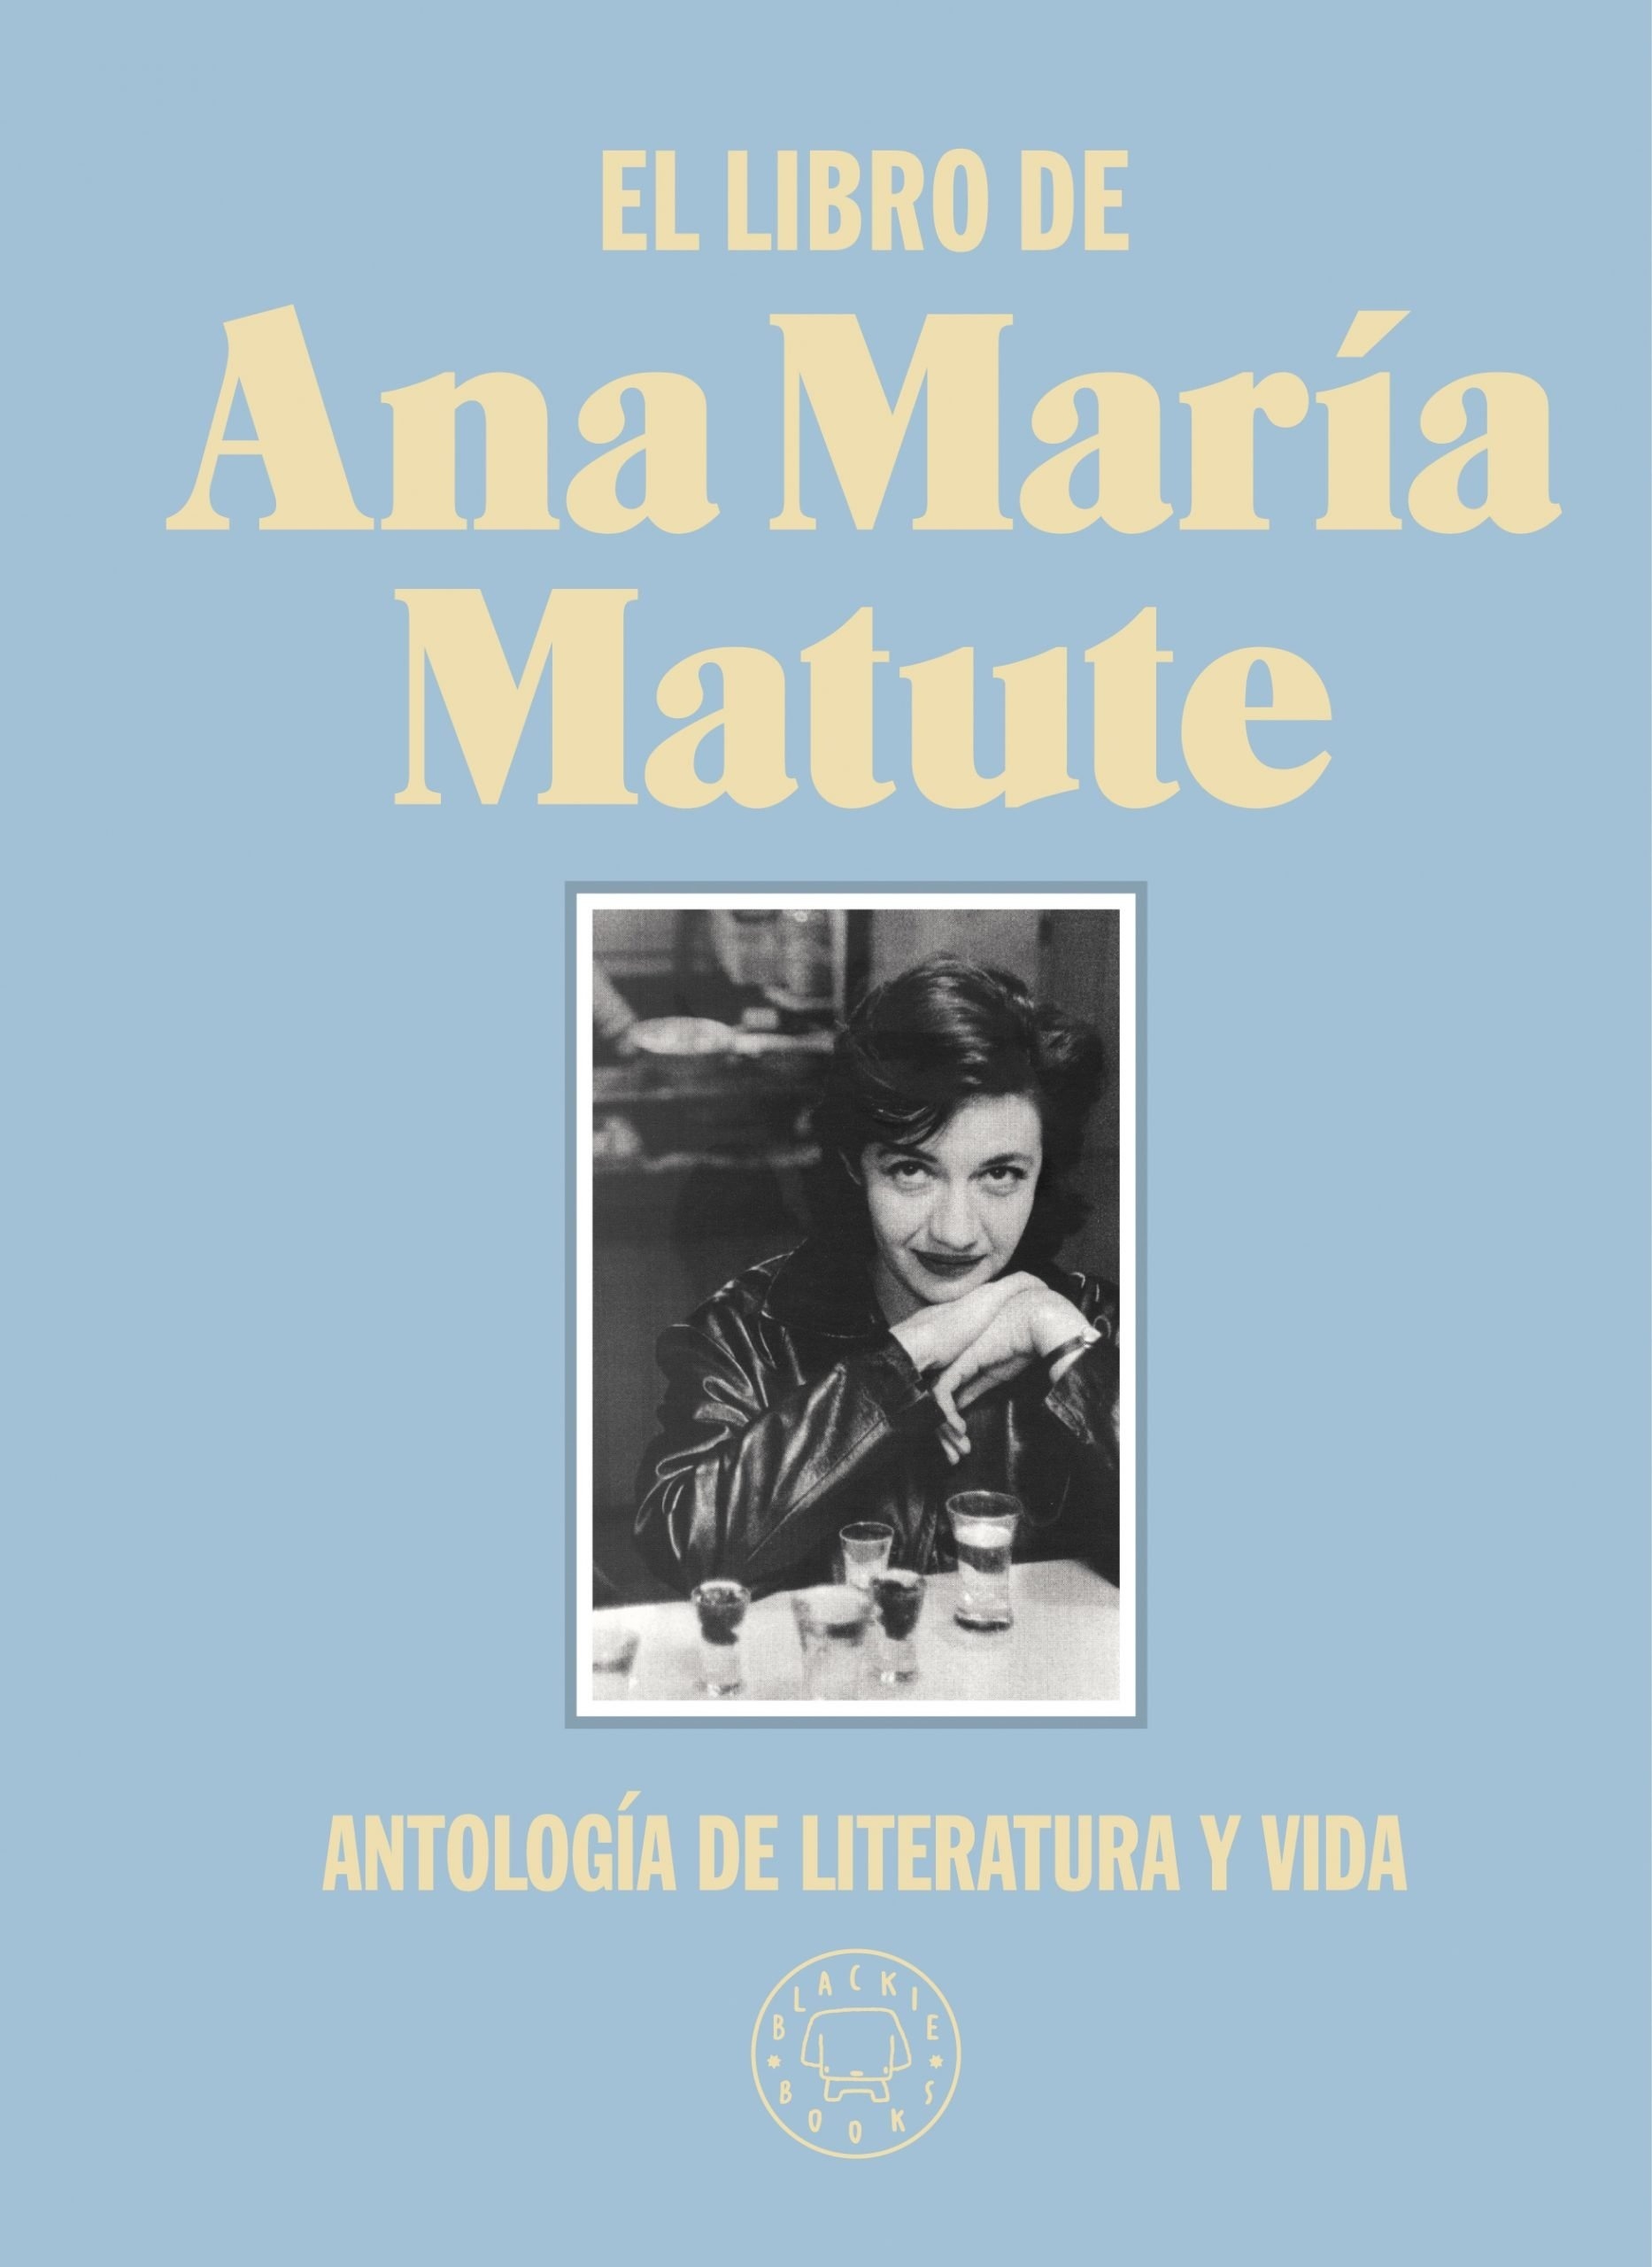 Libro de Ana María Matute, El "Antología de literatura y vida"